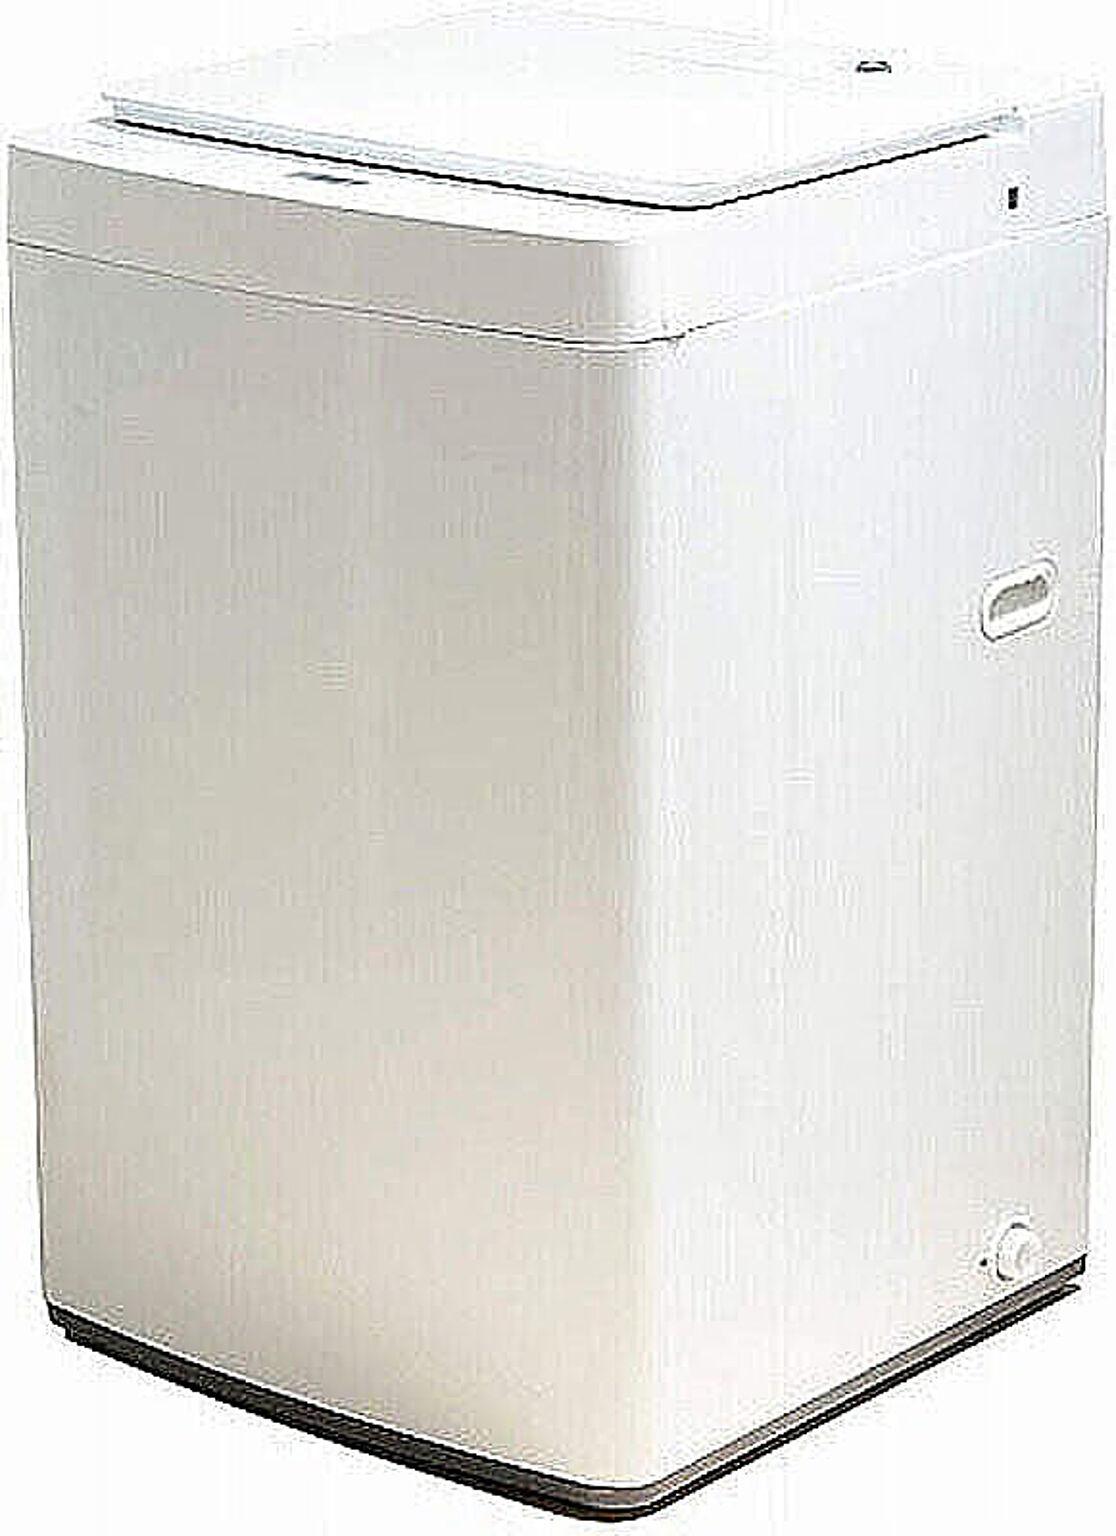 ツインバード 7kg 全自動洗濯機 ホワイト WM-EC70 管理No. 4975058537012